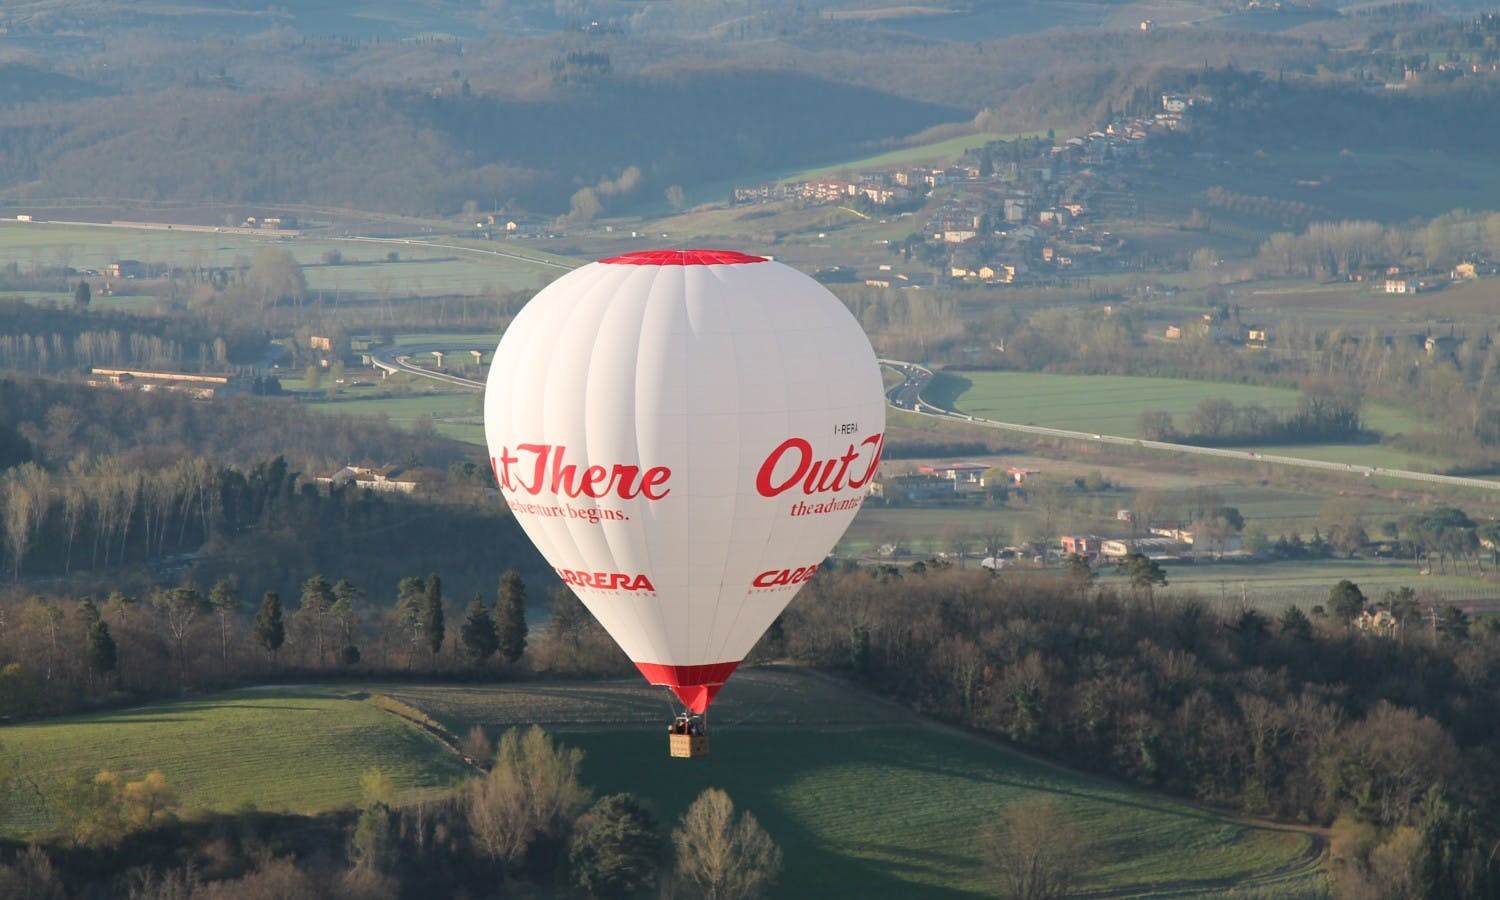 Fahrt mit dem Heißluftballon über Siena in der Toskana